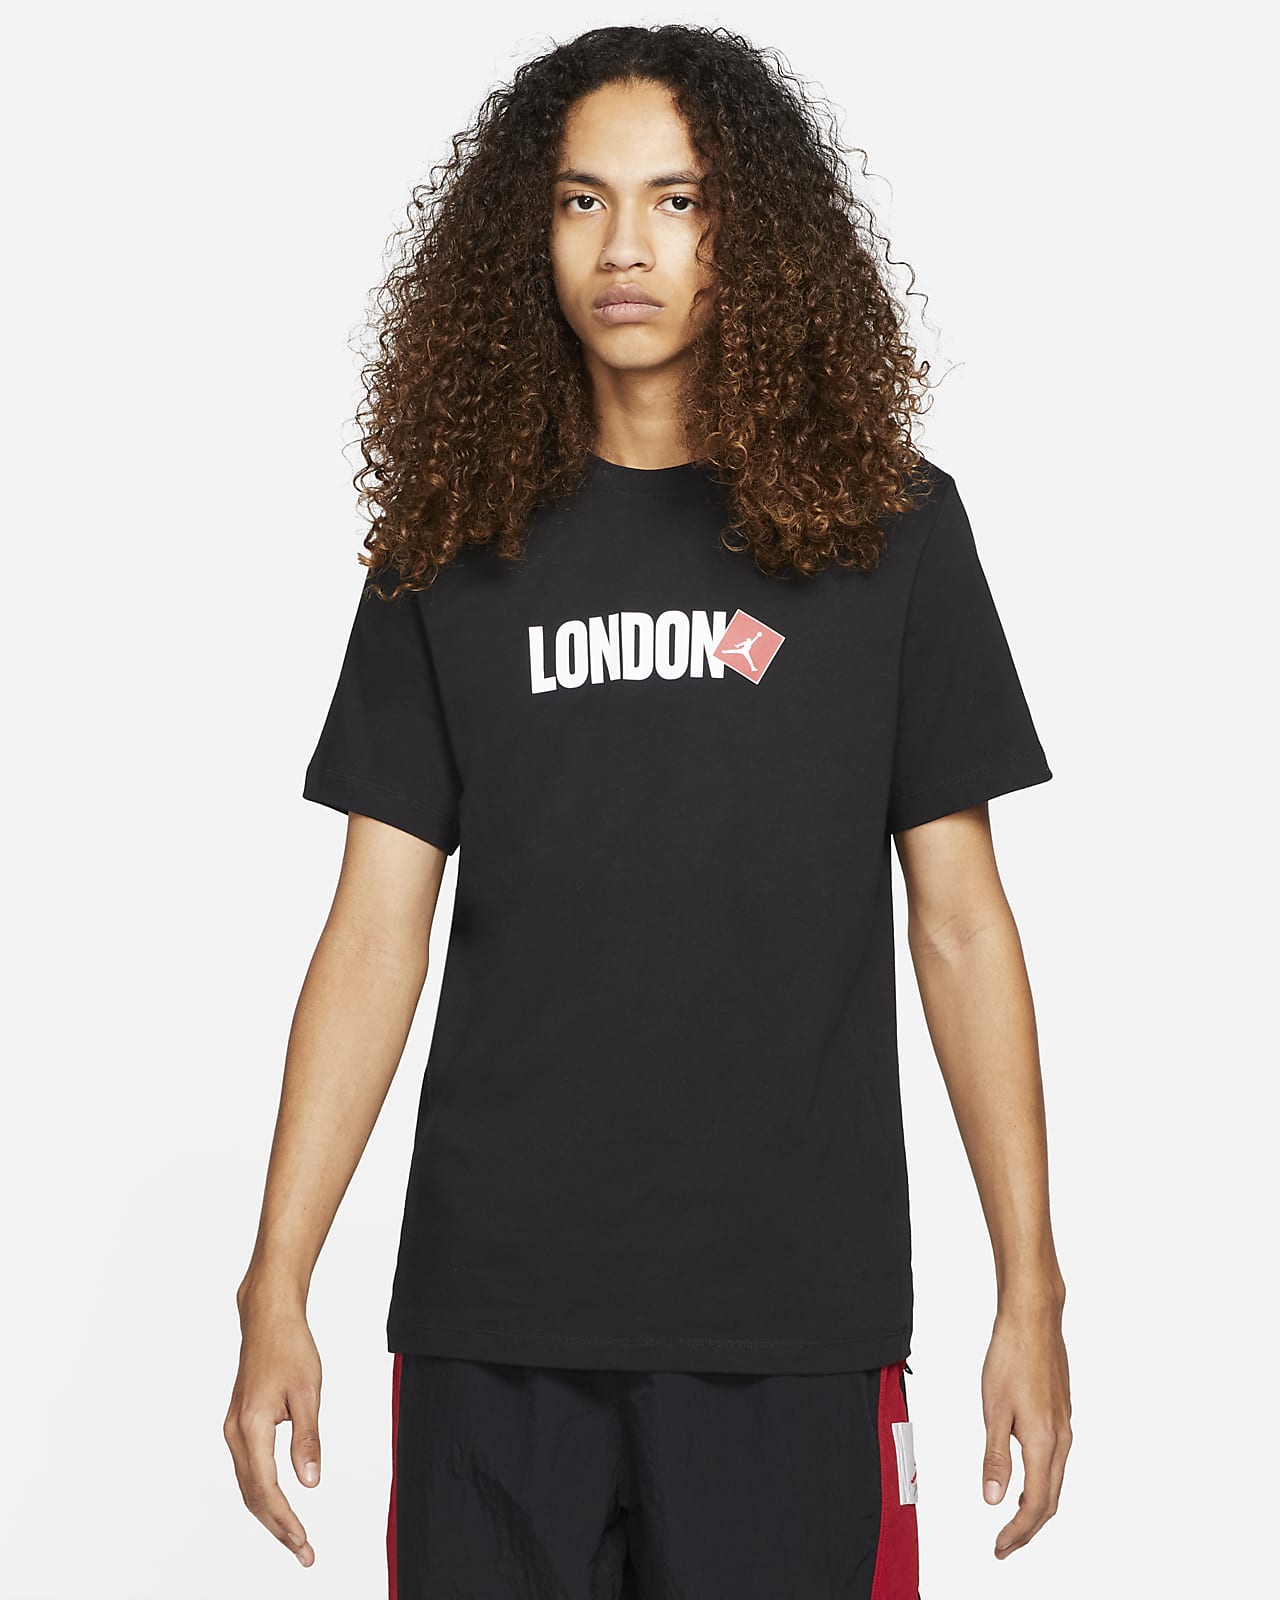 Jordan London Men's Short-Sleeve T-Shirt